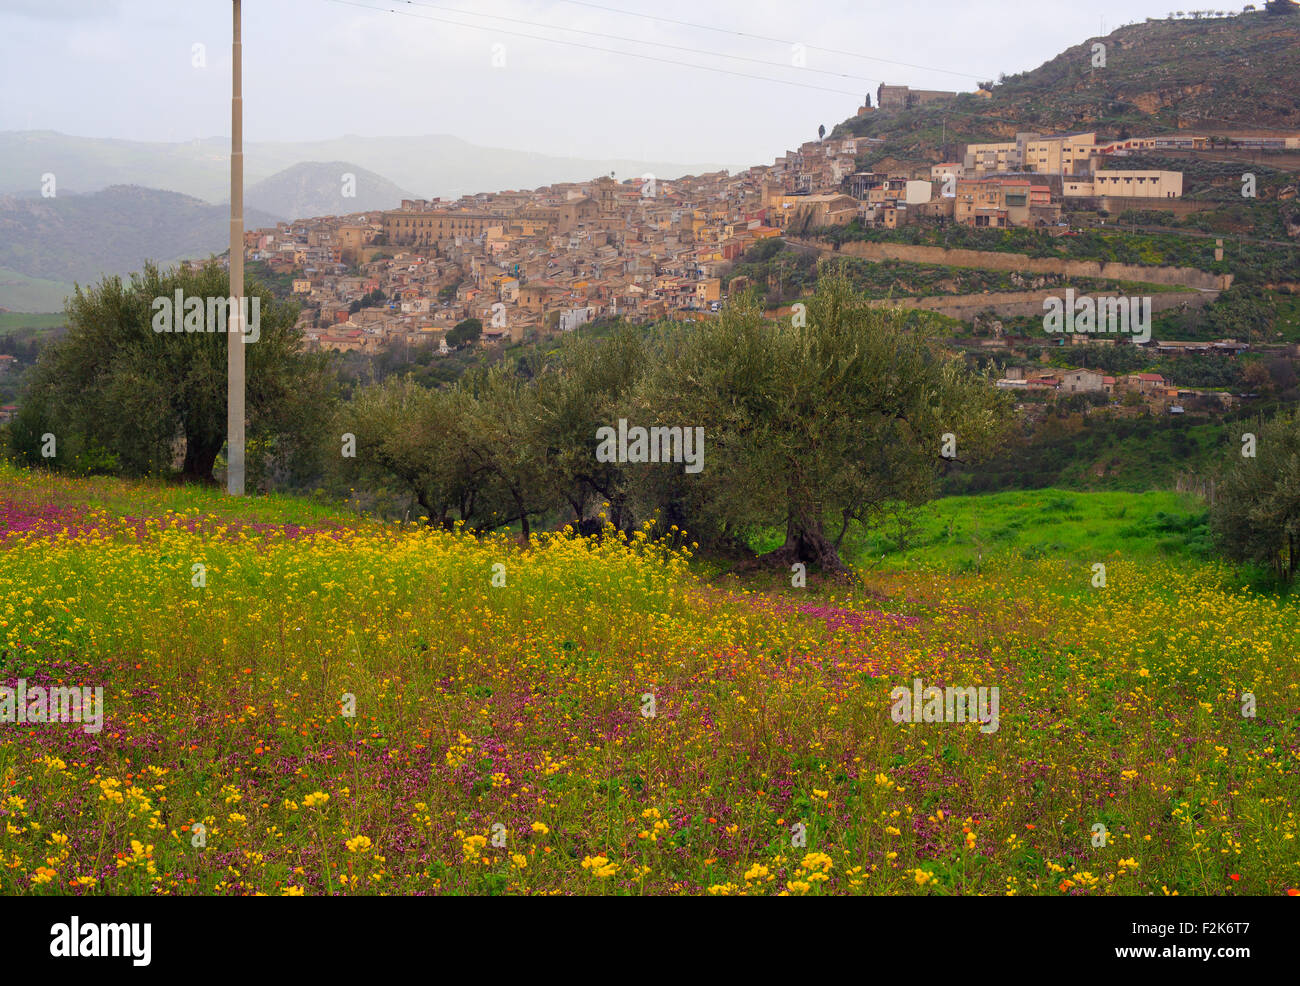 Ansicht der sizilianischen Landschaft in die Frühjahrssaison, Olivenbäume und bunte Blumen Stockfoto